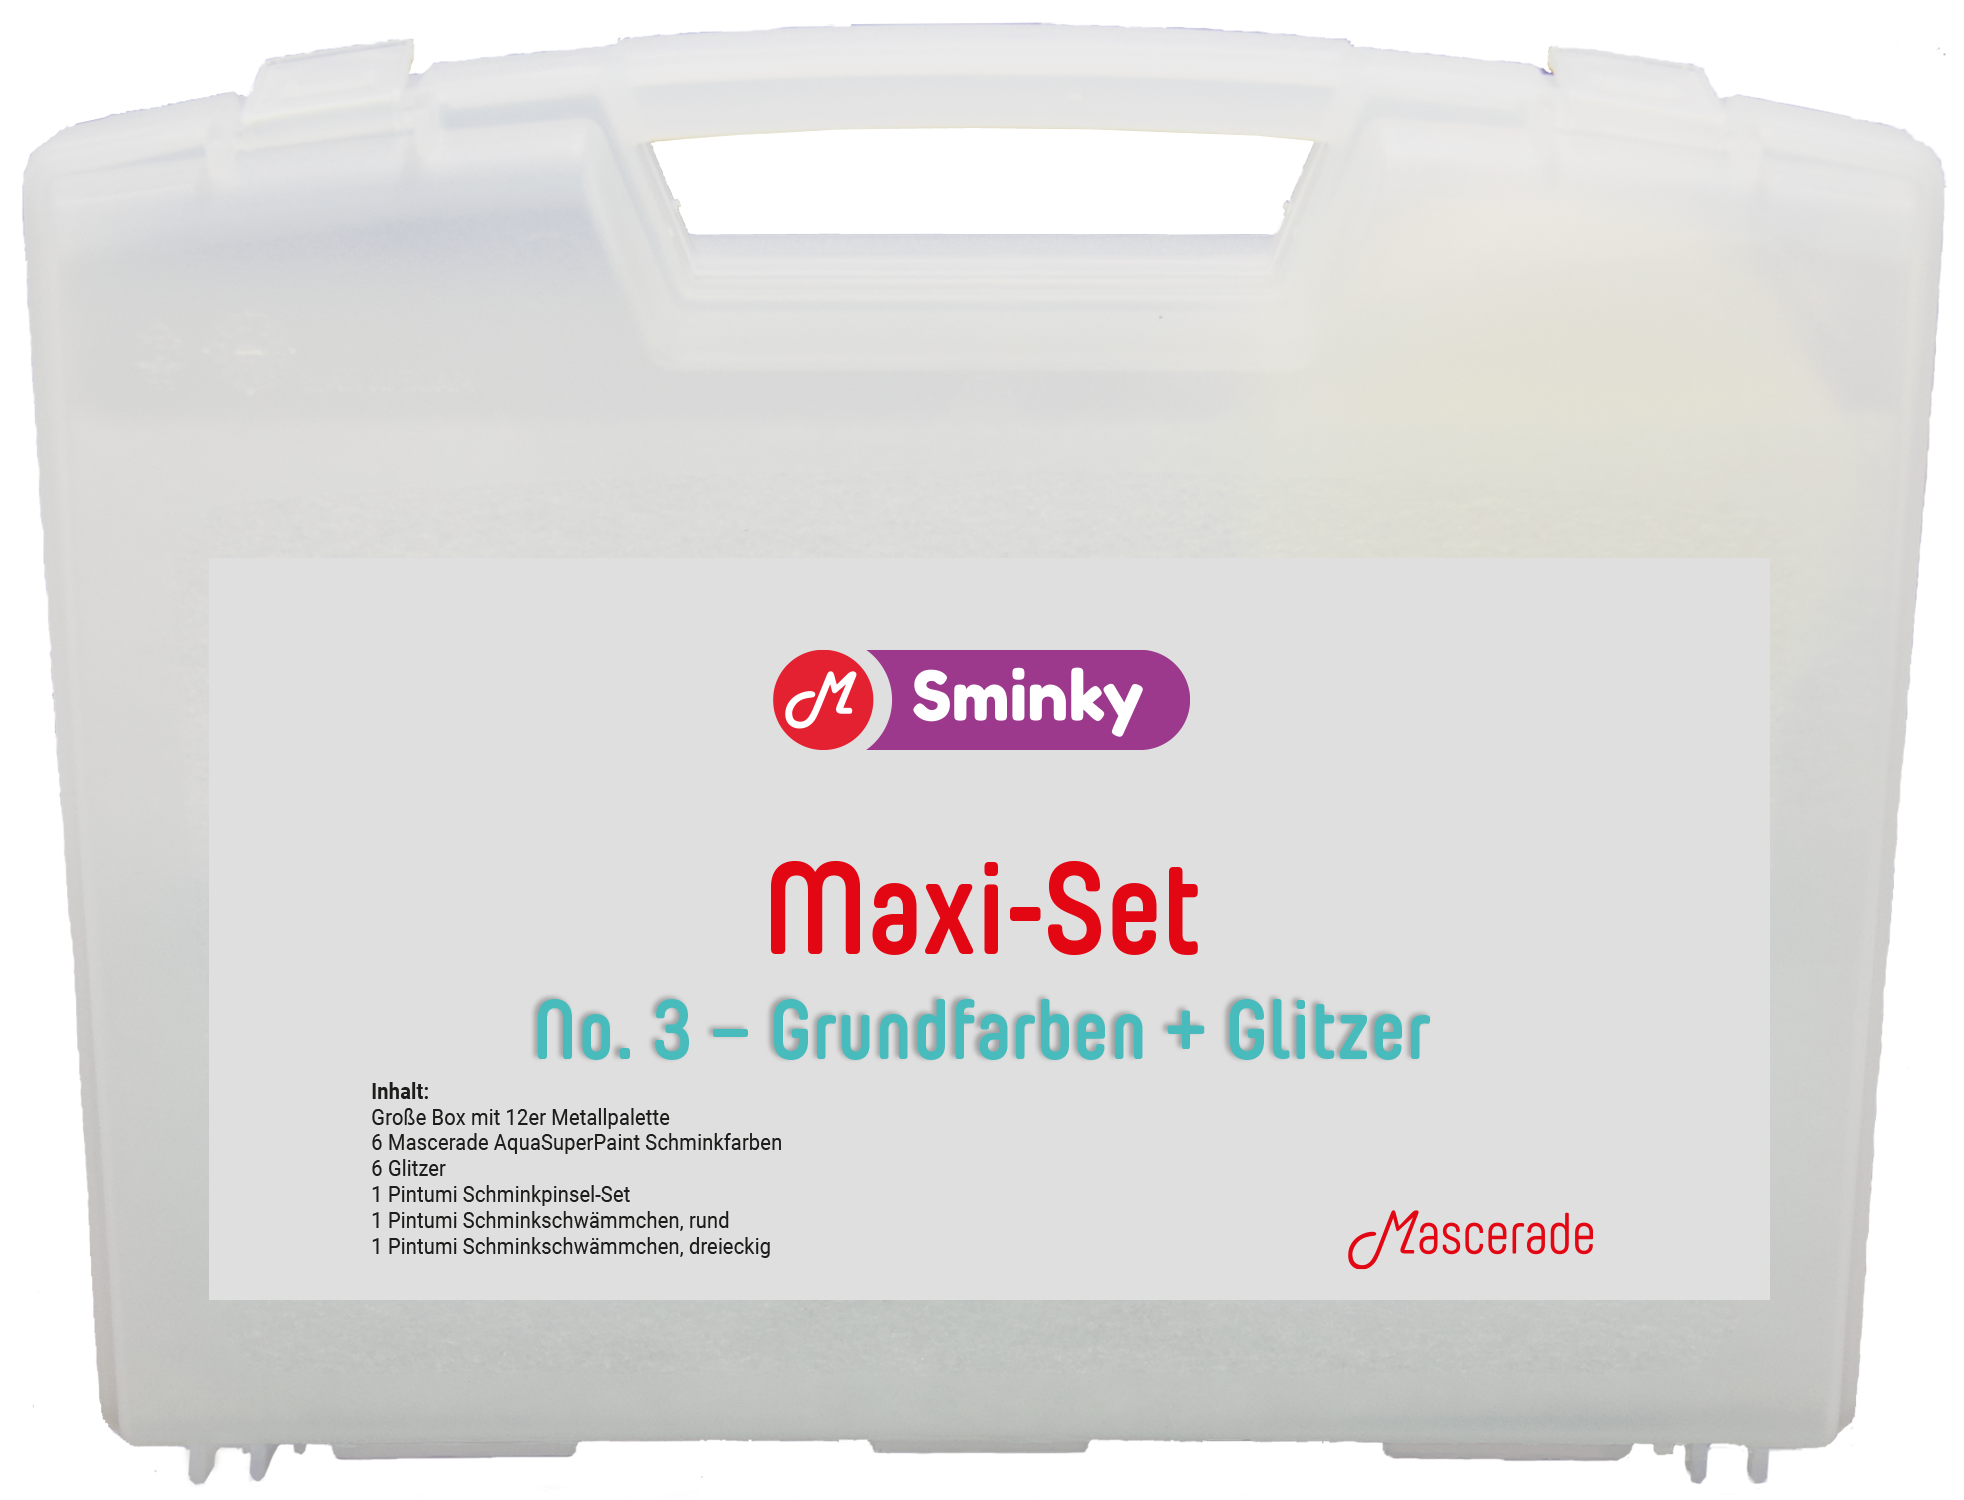 Mascerade Sminky Maxi-Set No.3 mit AquaSuperPaint Schminkpalette 3, SET-MAXI-3